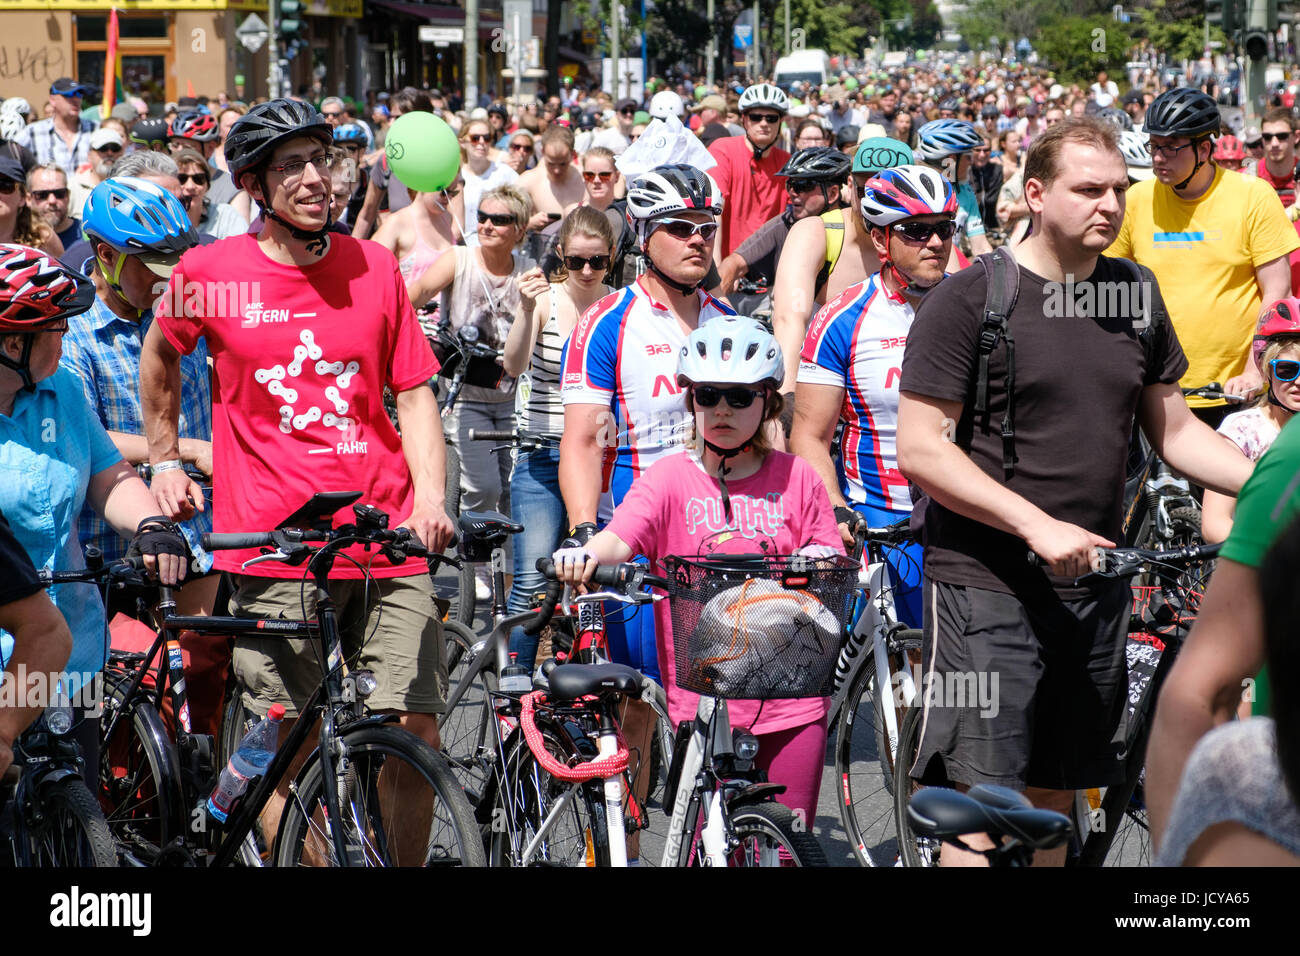 Berlin, Allemagne - le 11 juin, 217 : Beaucoup de gens sur des vélos sur une bicyclette de démonstration (Sternfahrt) à Berlin, Allemagne. Banque D'Images